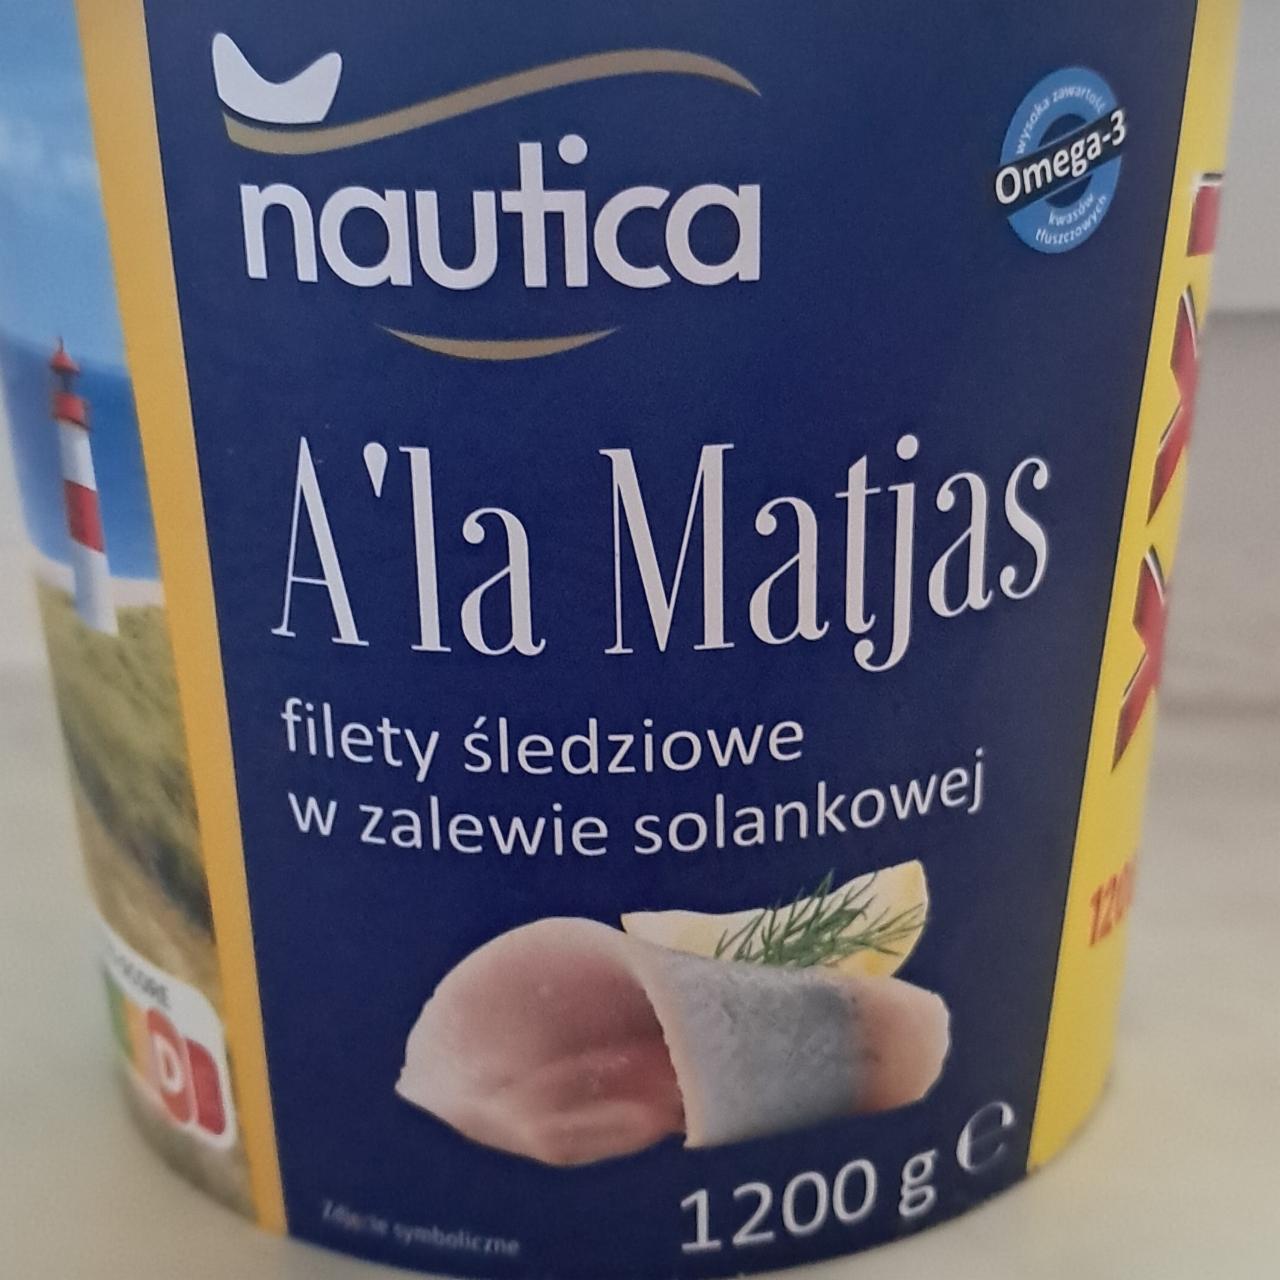 Zdjęcia - A'la Matjas, filety śledziowe w zalewie solankowej Nautica